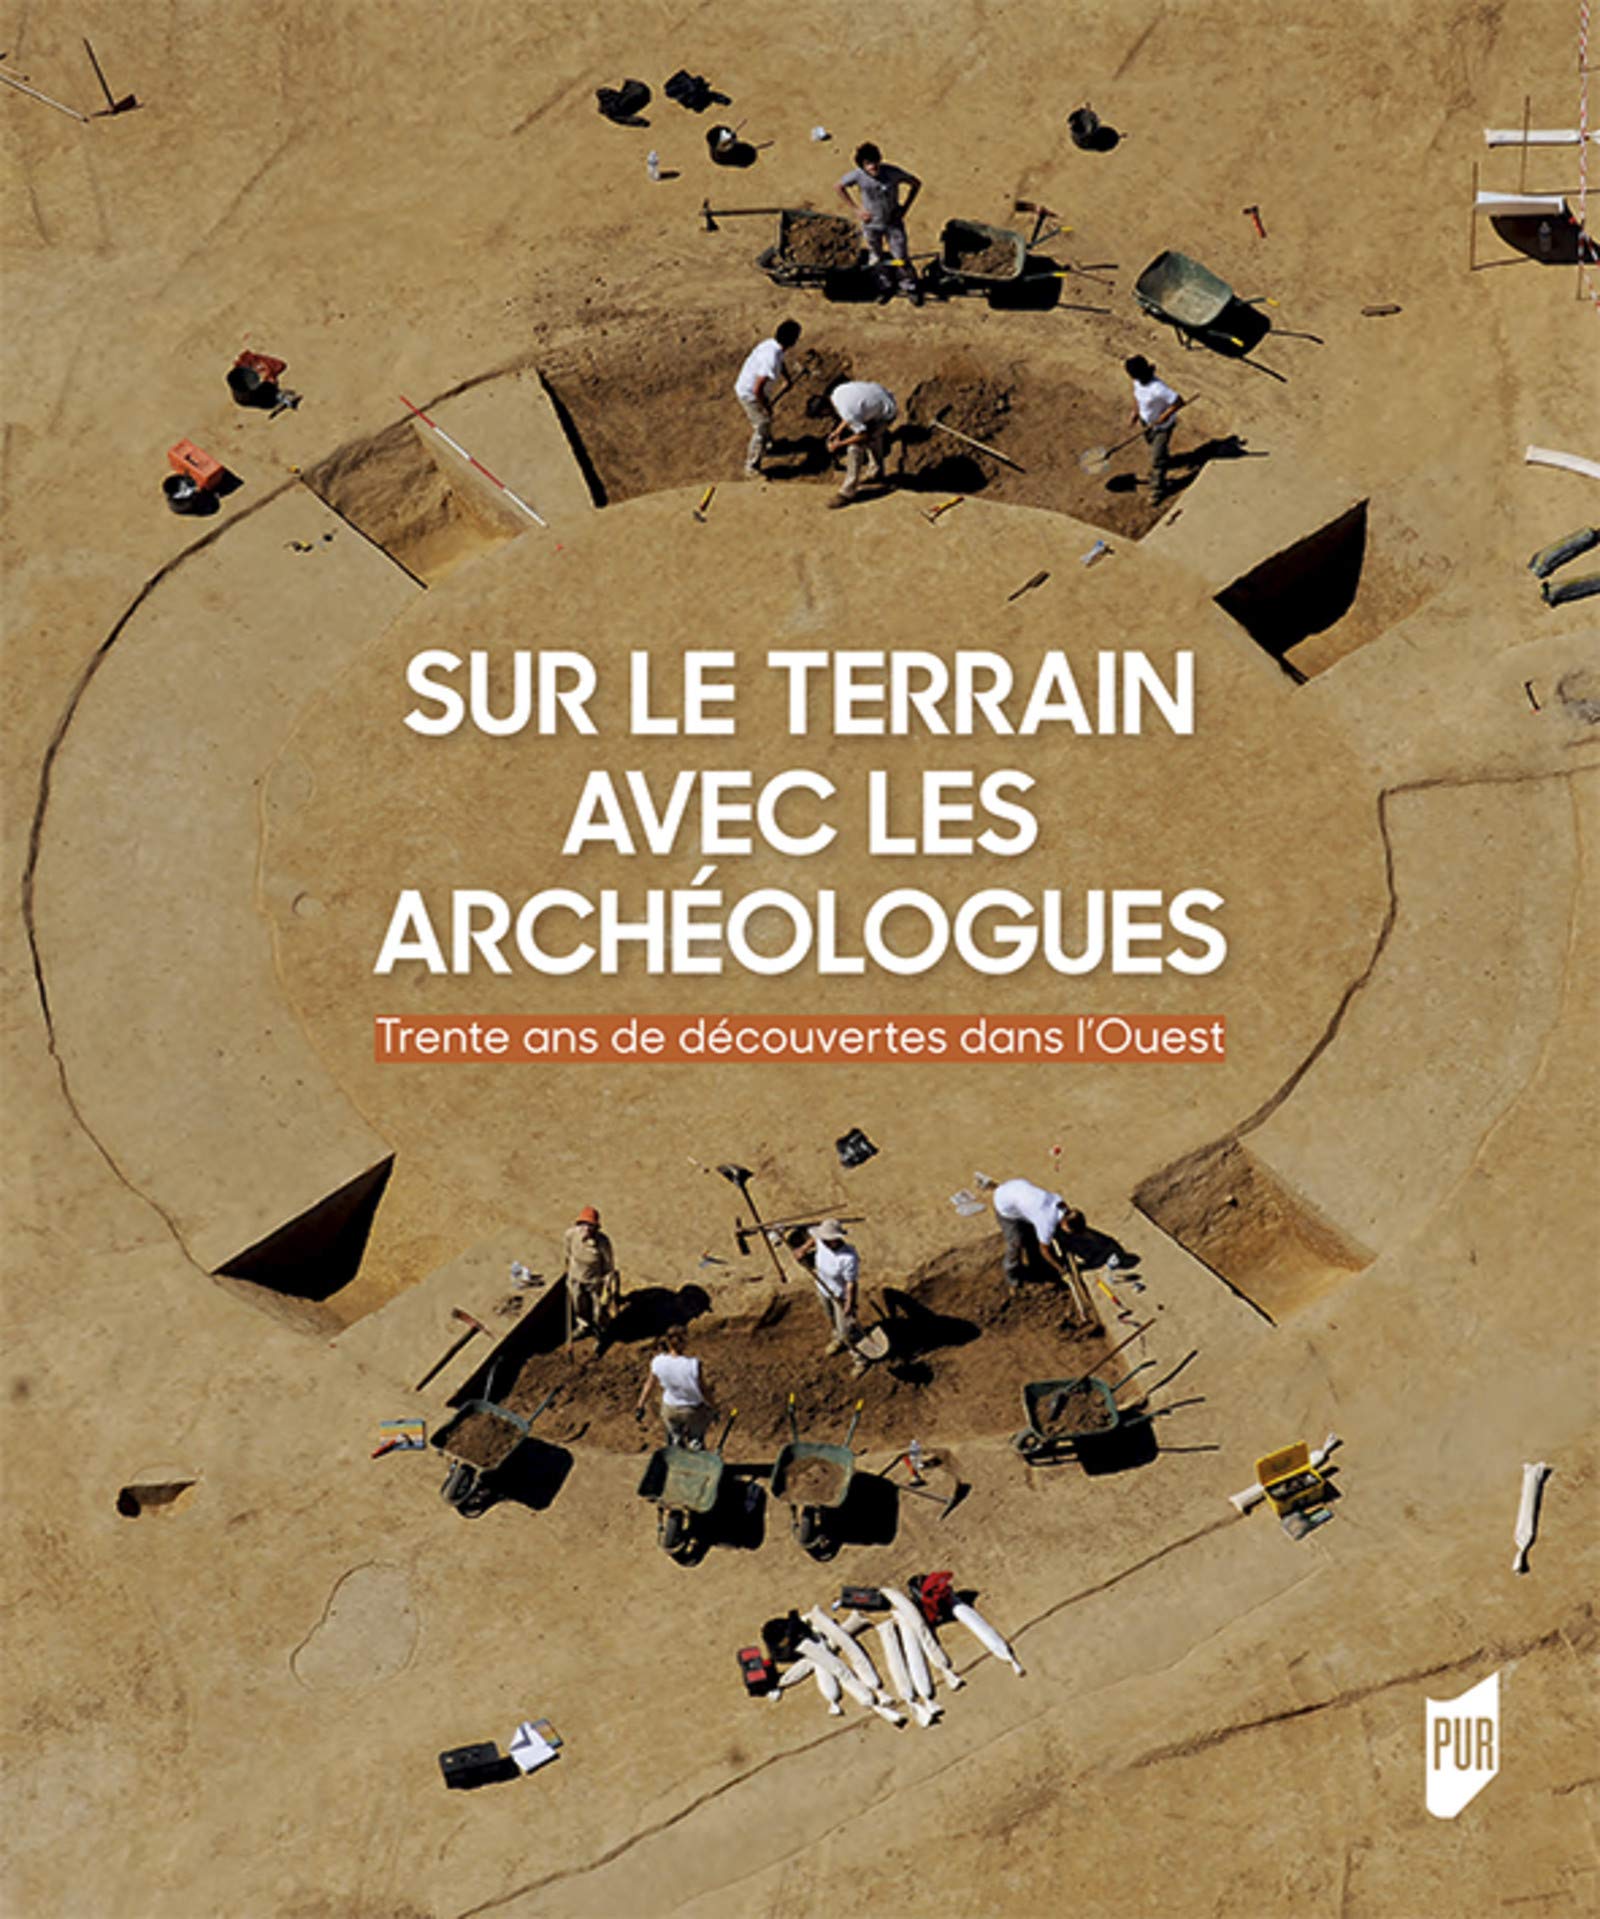 Sur le terrain avec les archéologues. Trente ans de découvertes archéologiques dans l'Ouest de la France, 2018, 298 p.